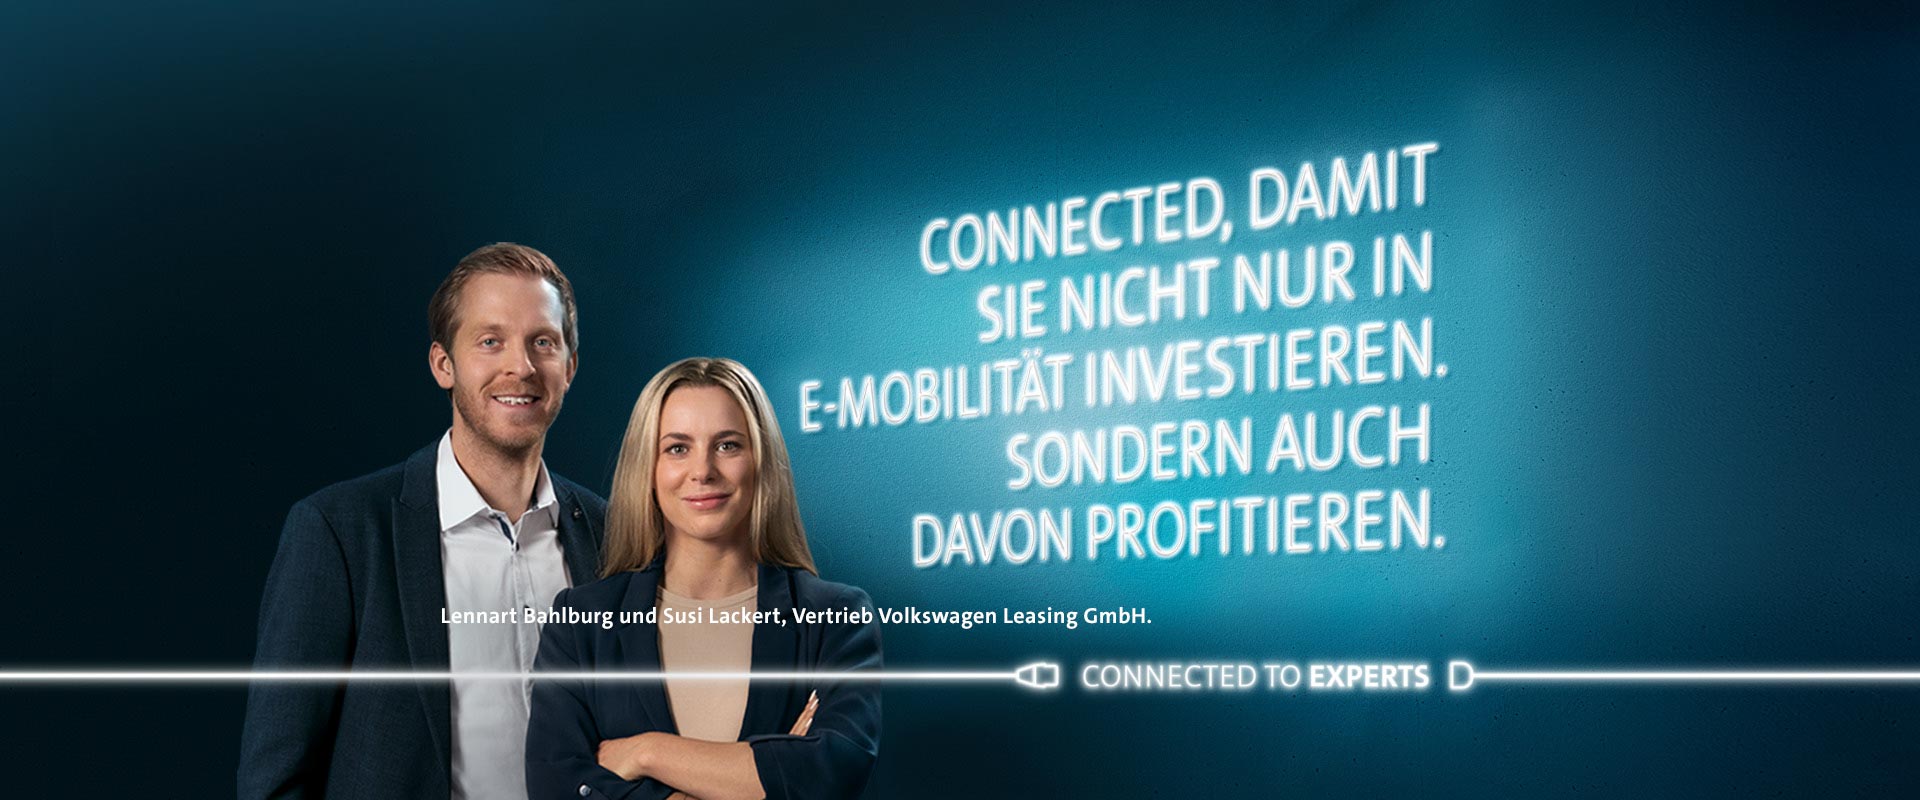 Lennart Bahlburg und Susi Lackert, Vertrieb Volkswagen Leasing GmbH.